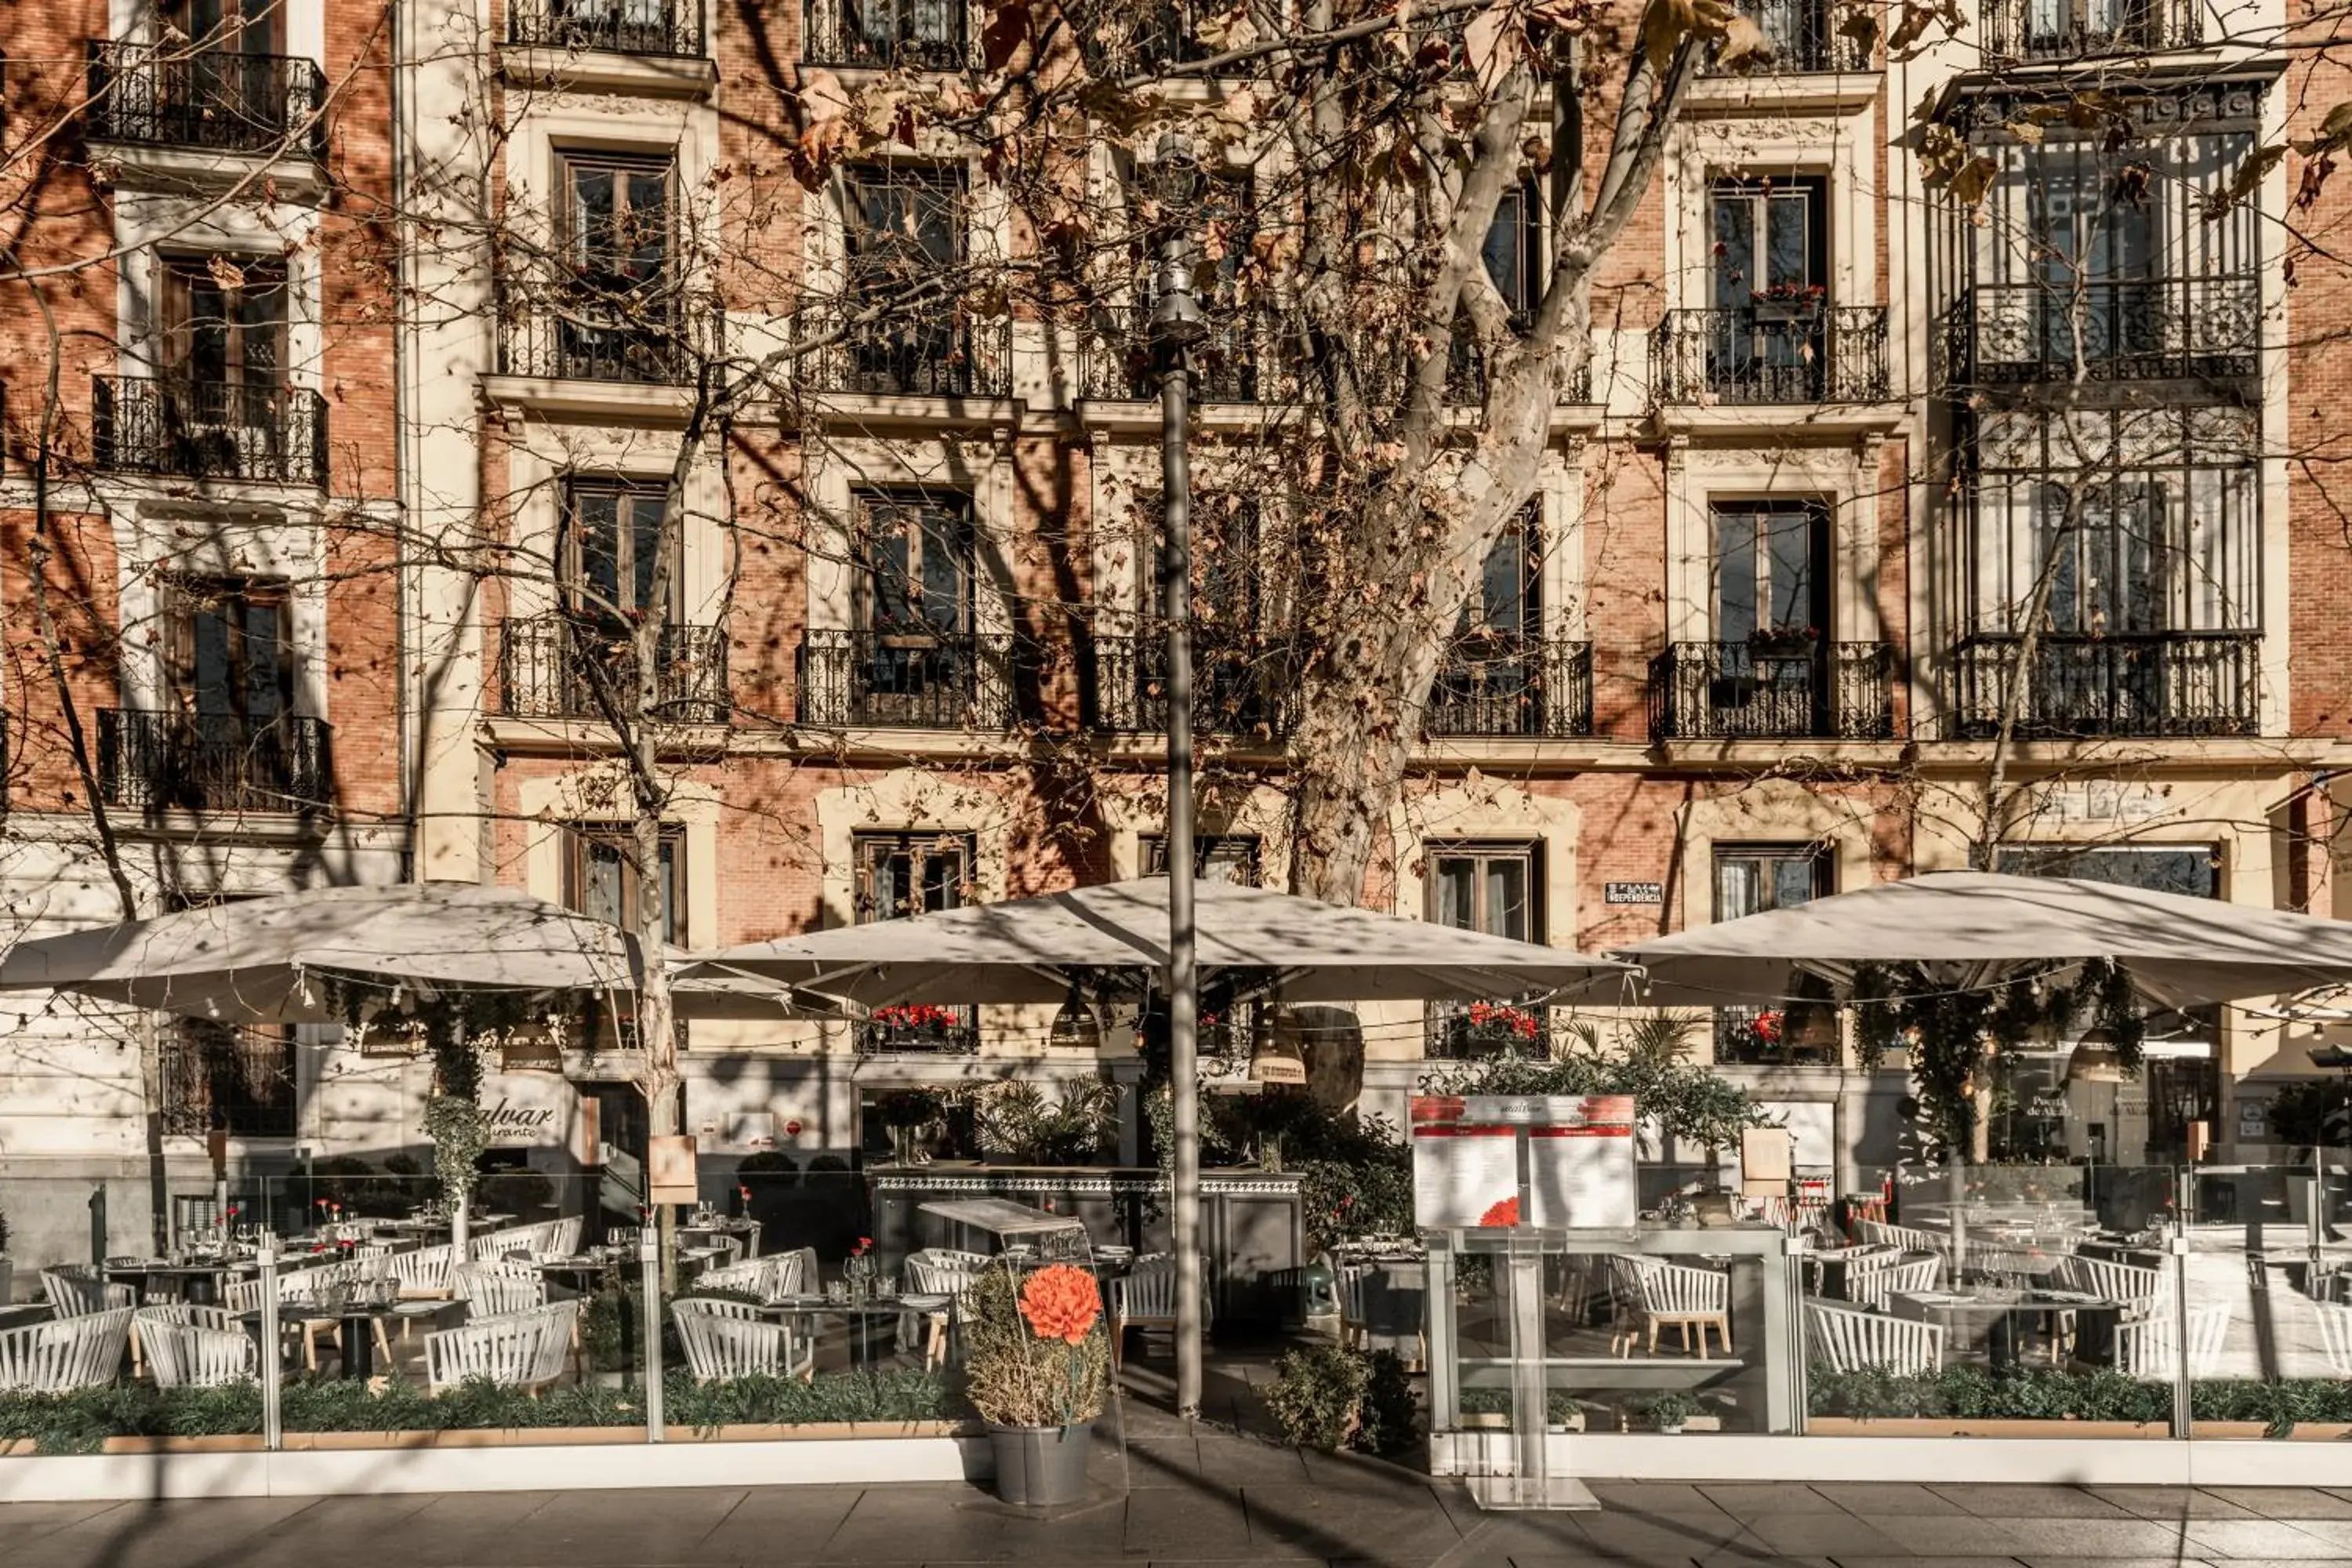 Restaurant/places to eat in Hospes Puerta de Alcalá